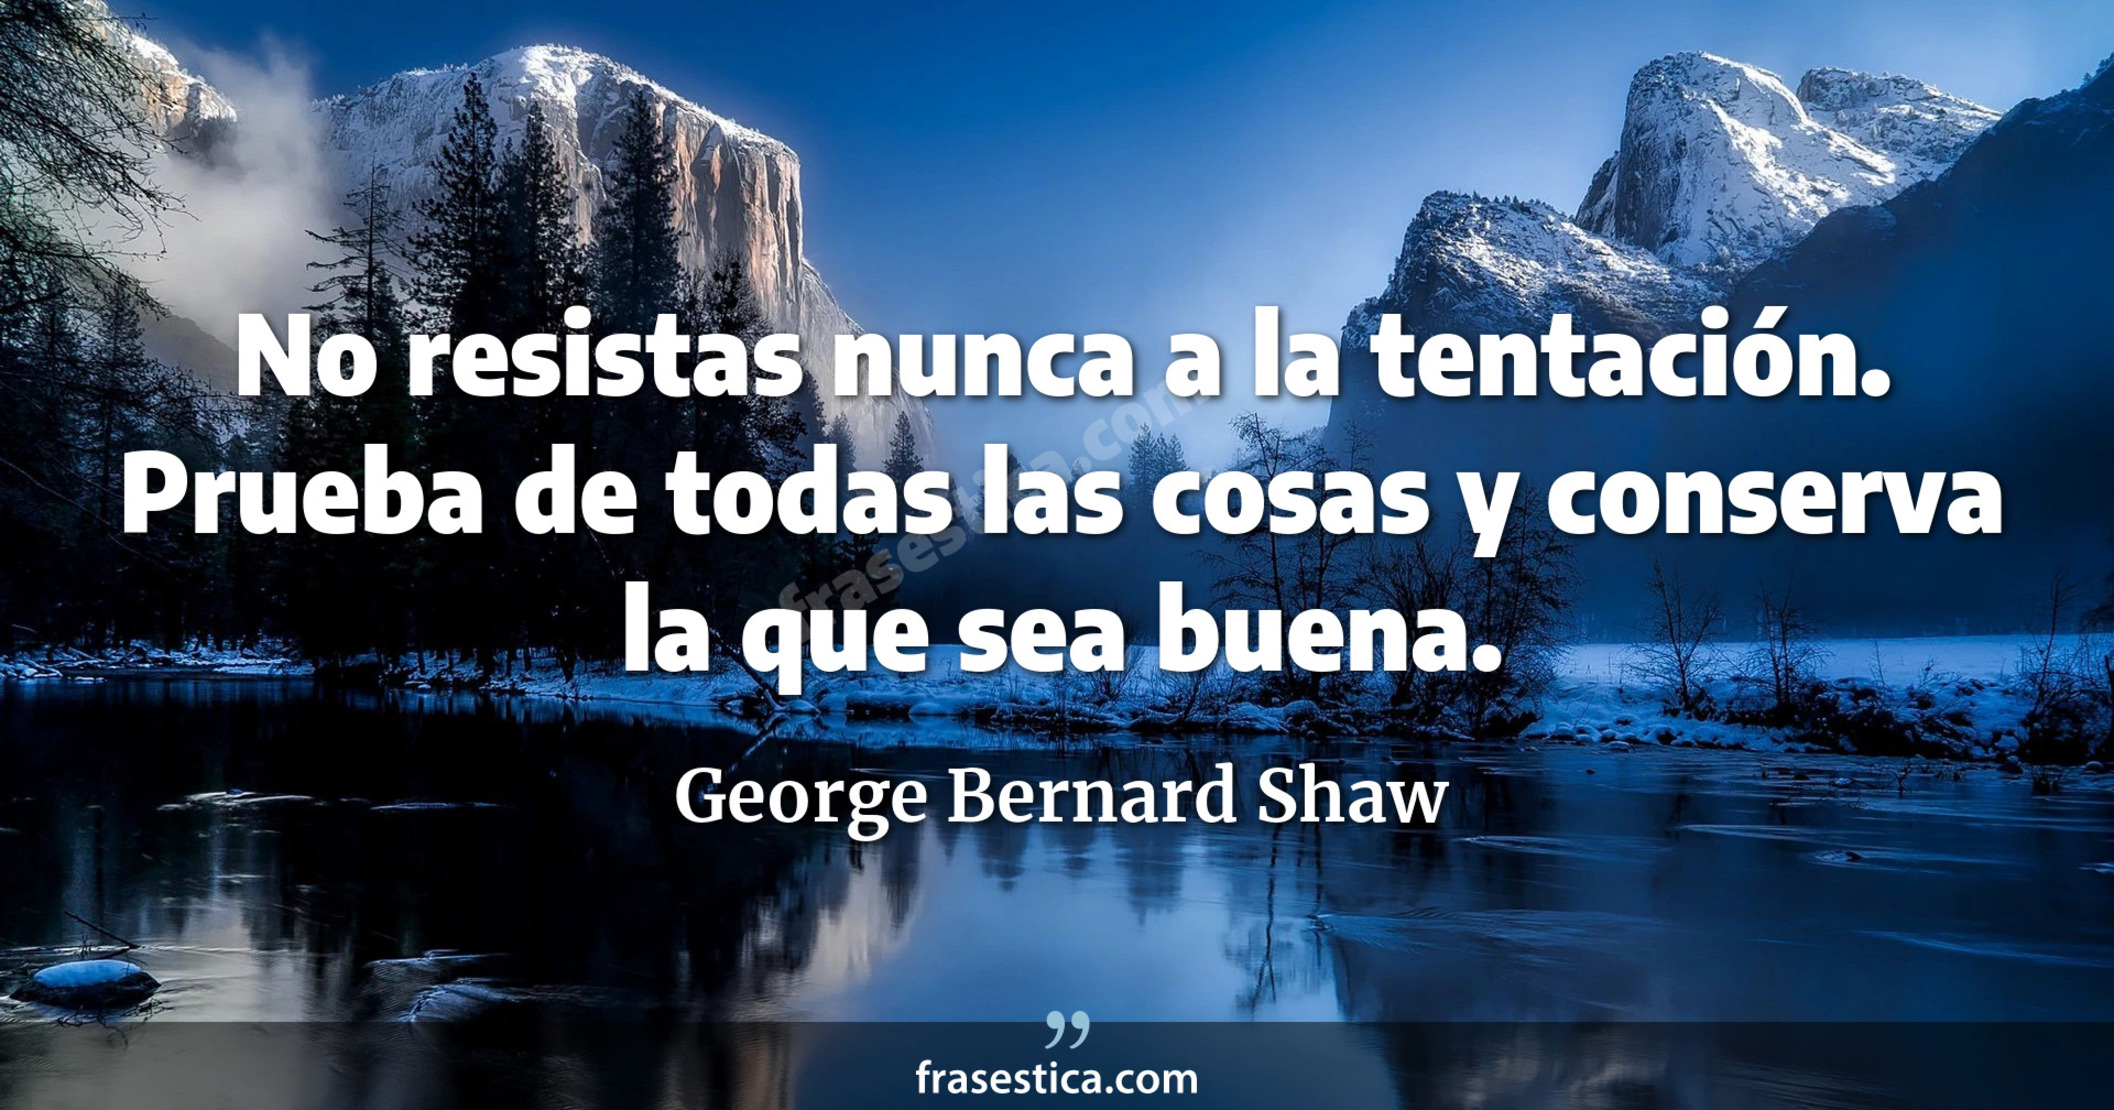 No resistas nunca a la tentación. Prueba de todas las cosas y conserva la que sea buena. - George Bernard Shaw